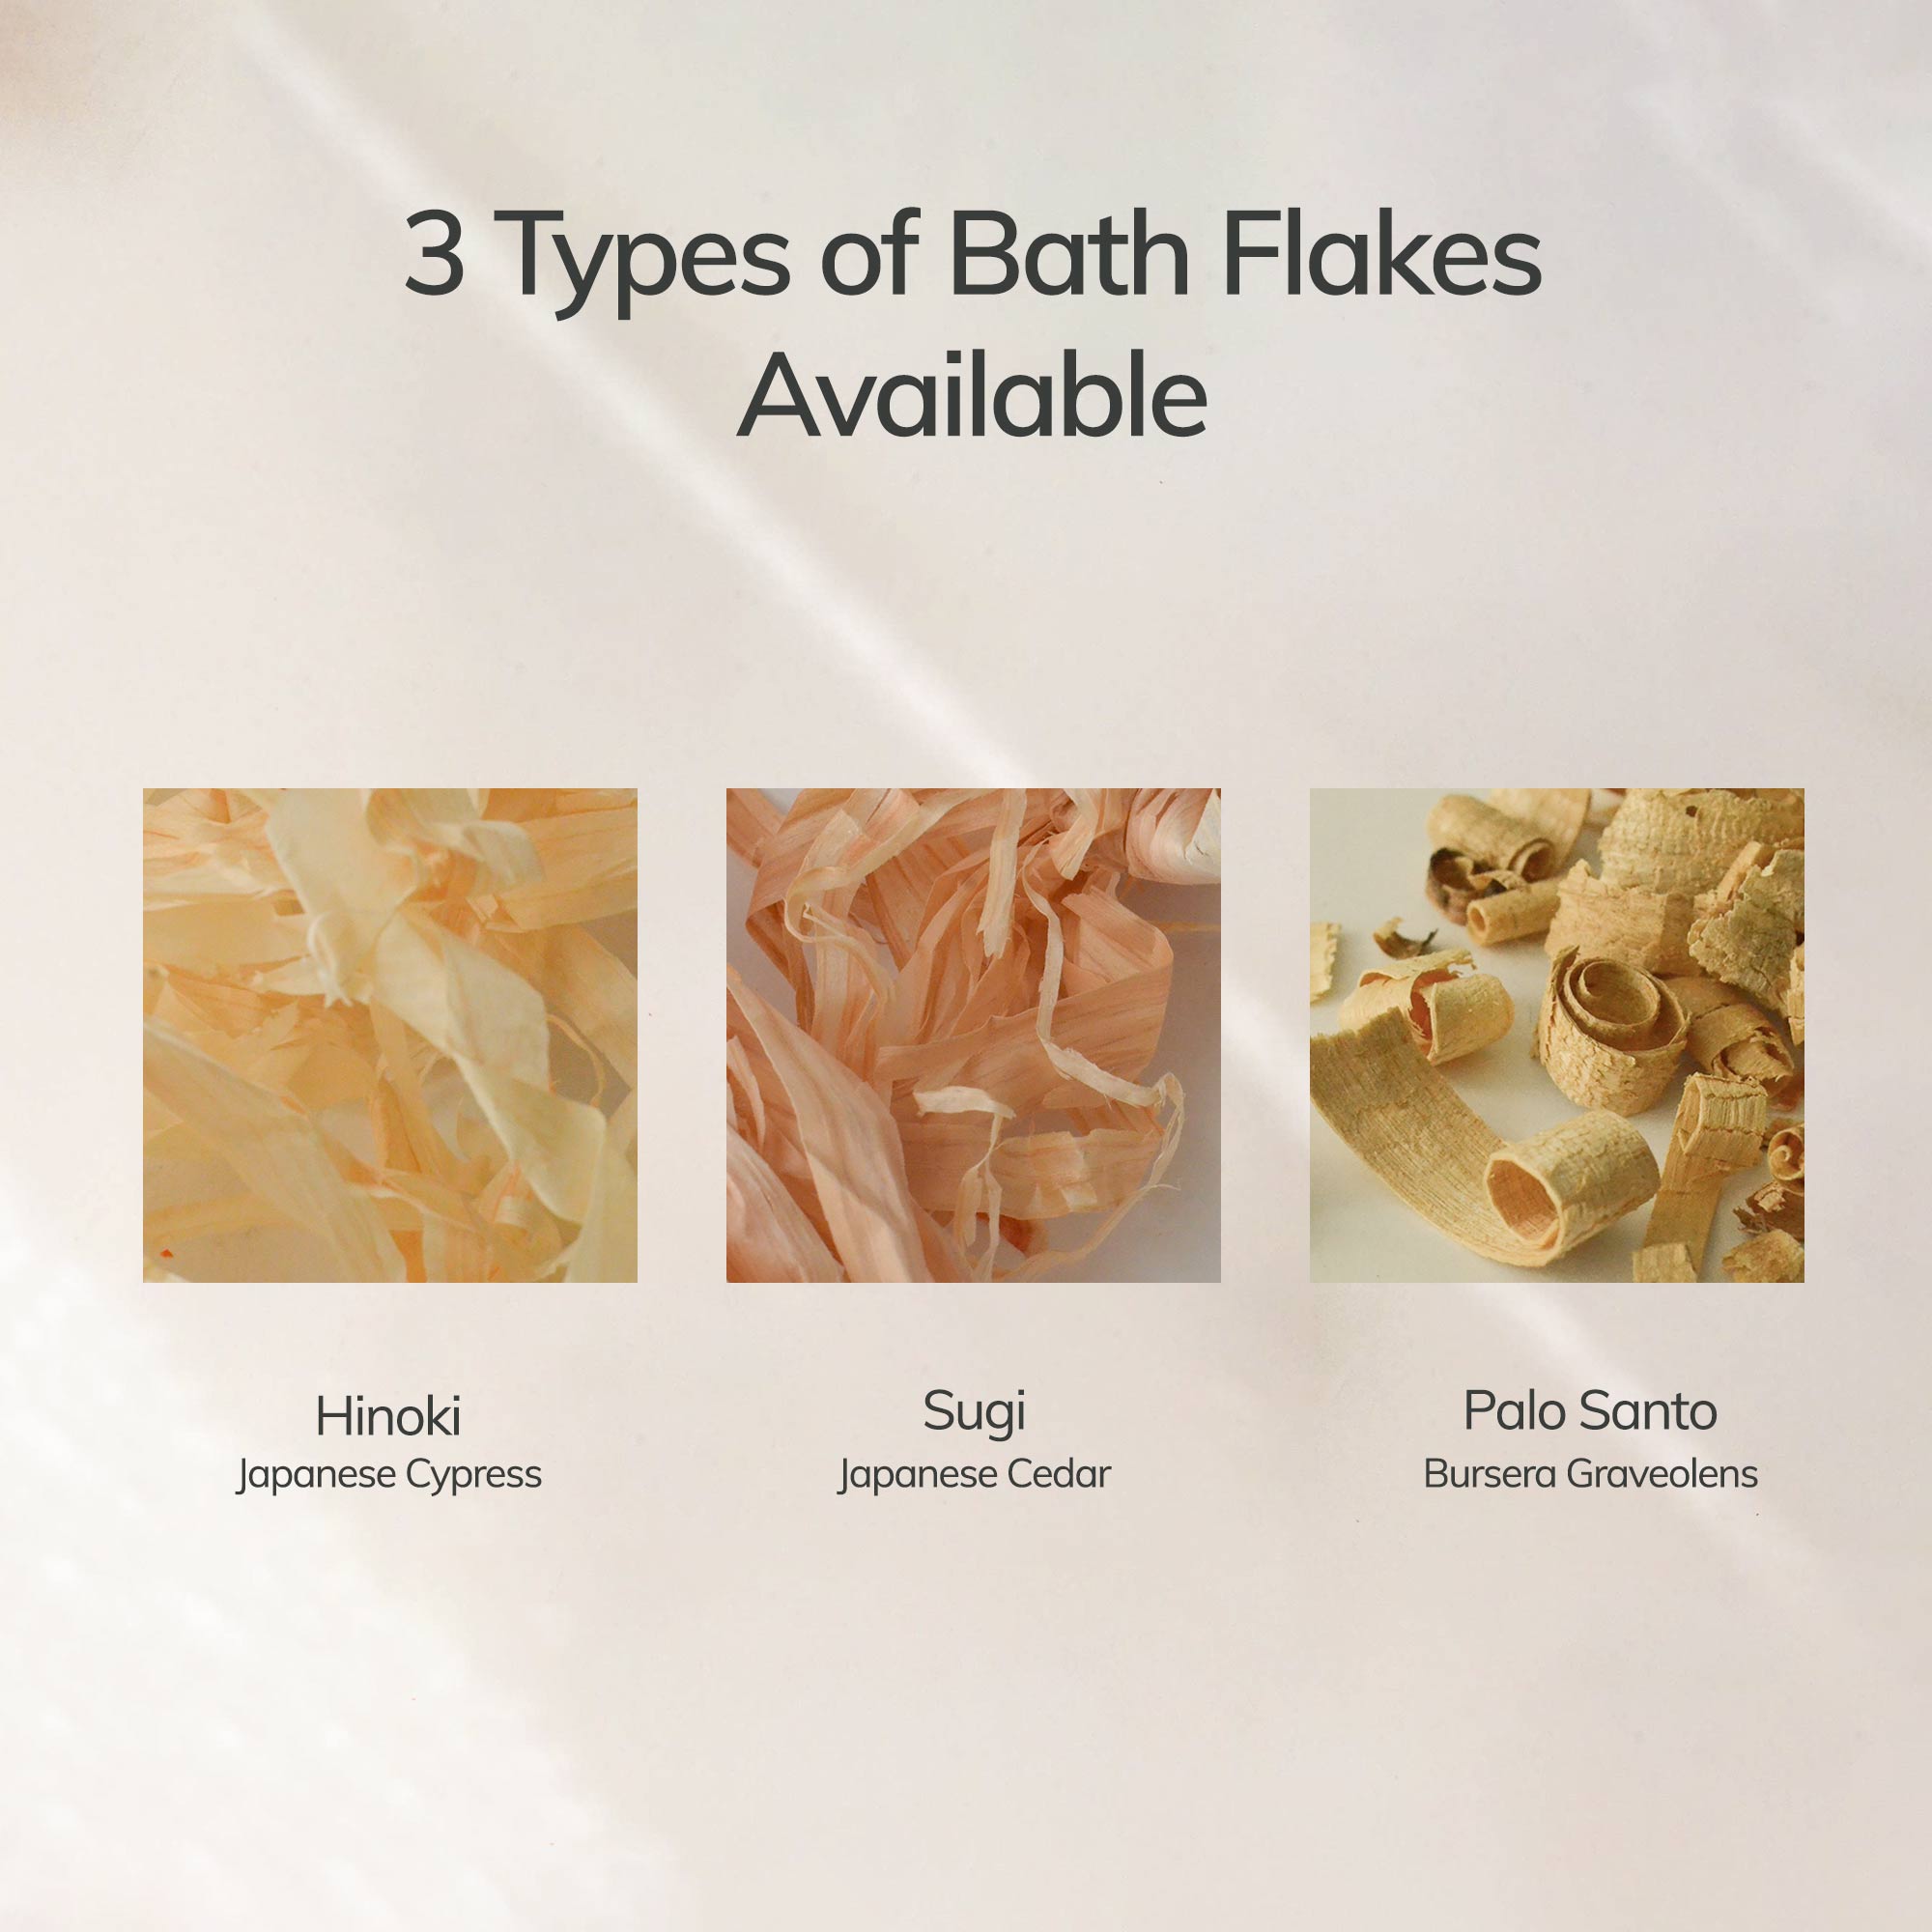 3 types of bath flakes available: Hinoki, Sugi, Palo Santo